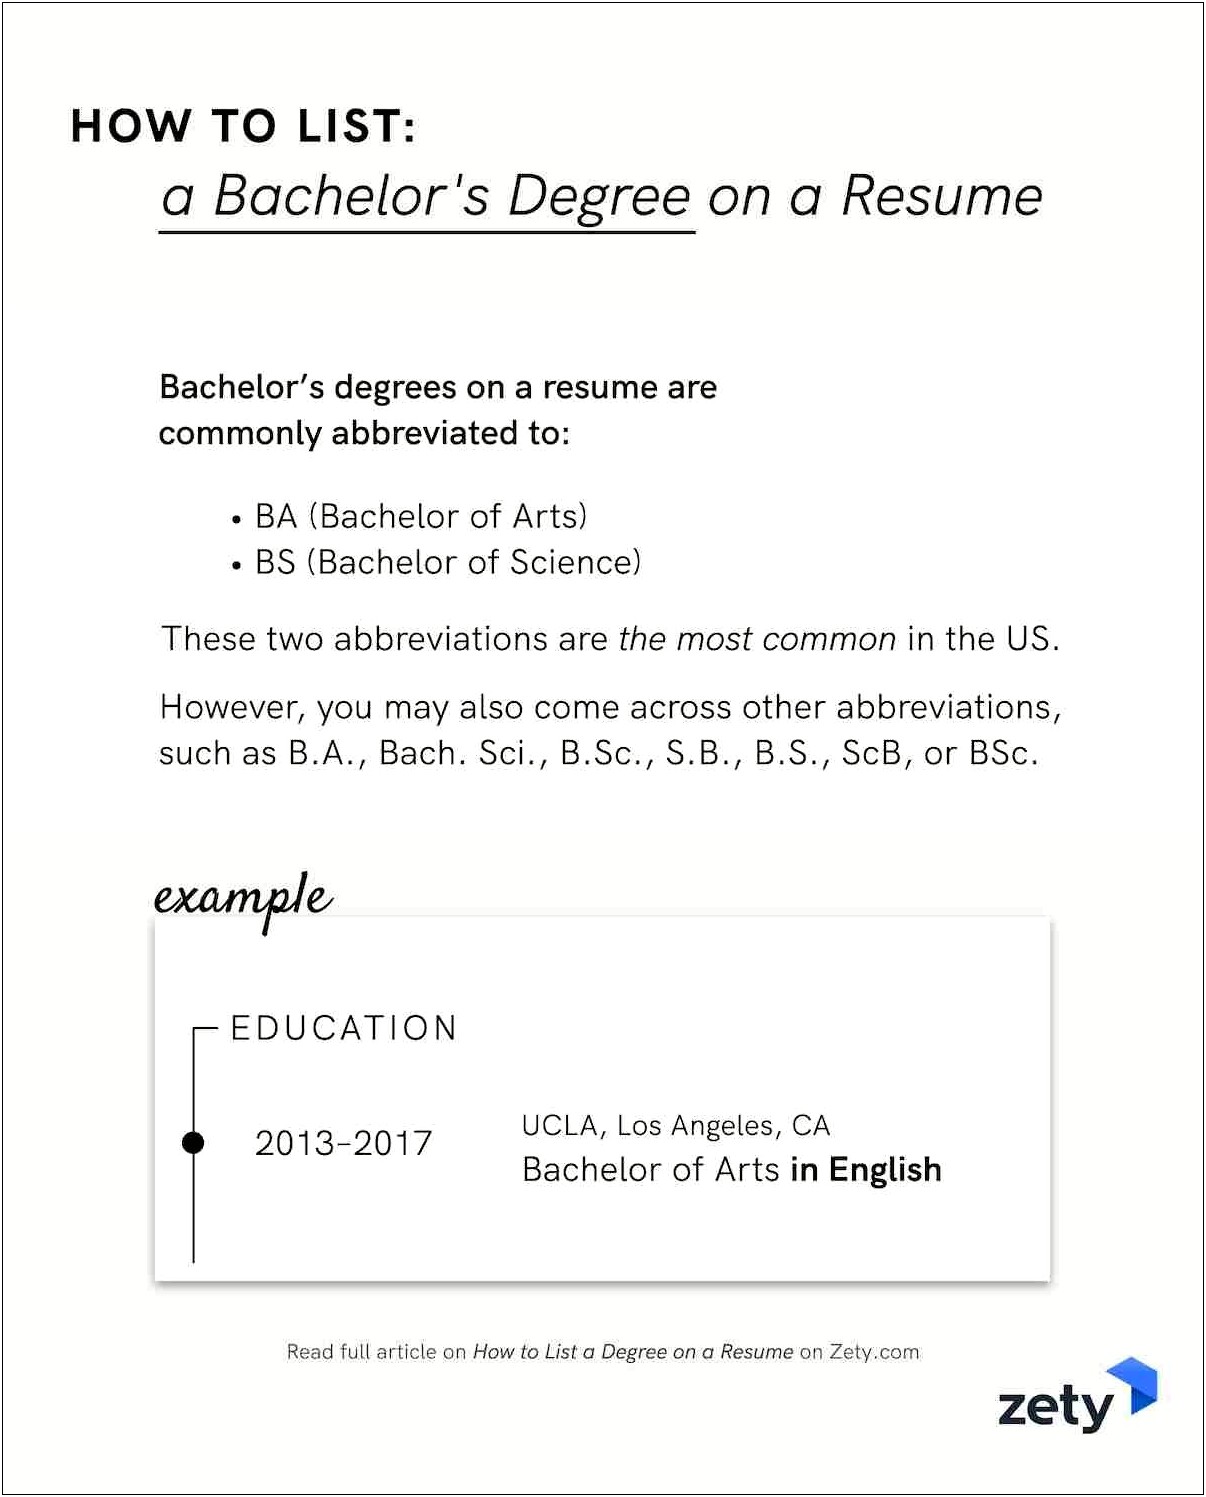 Sample Resume For Bachelor Of Arts Degree